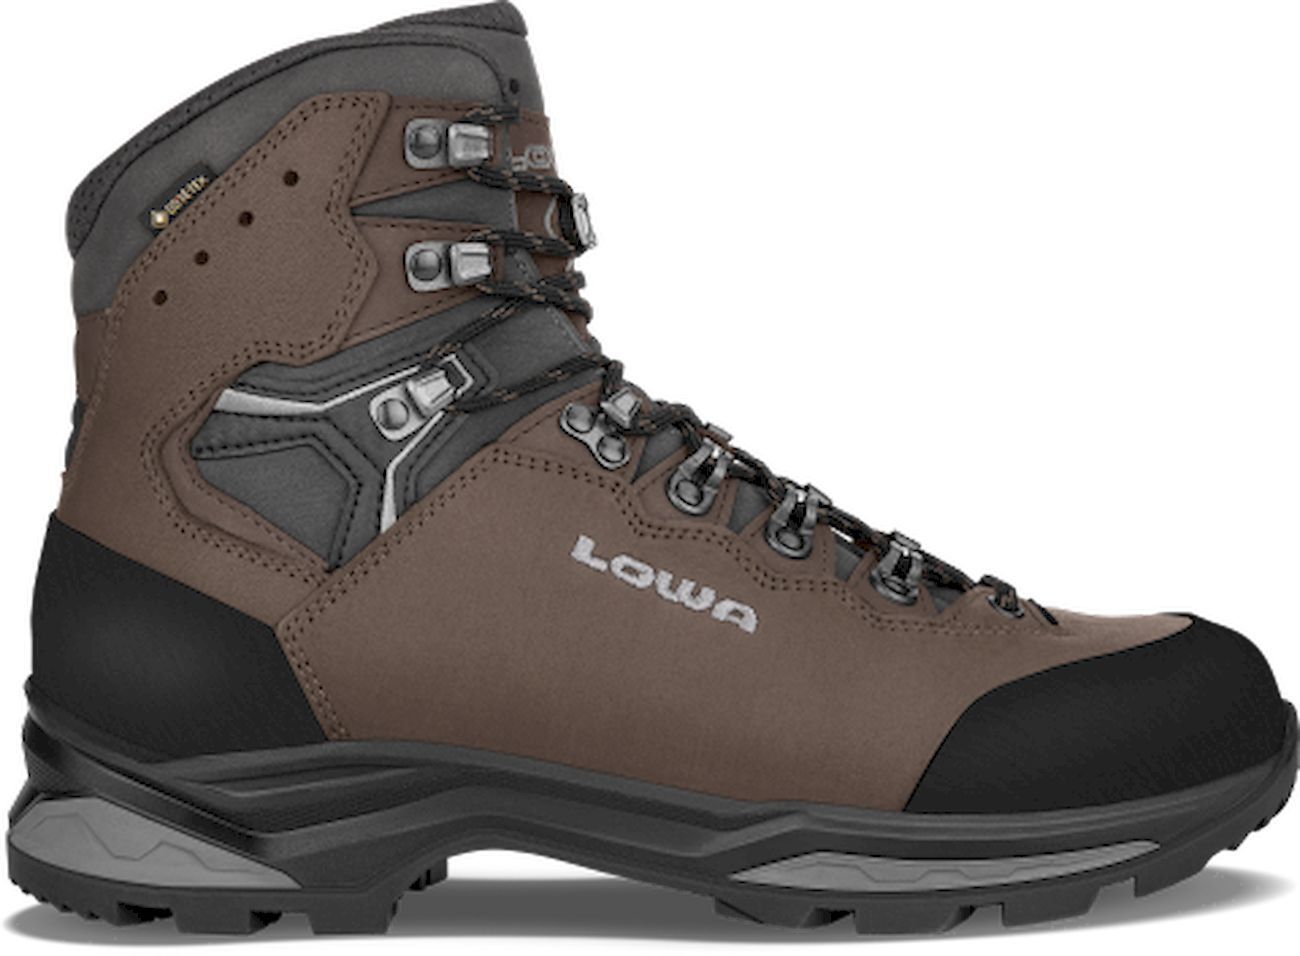 Lowa Camino Evo GTX - Trekking boots - Men's